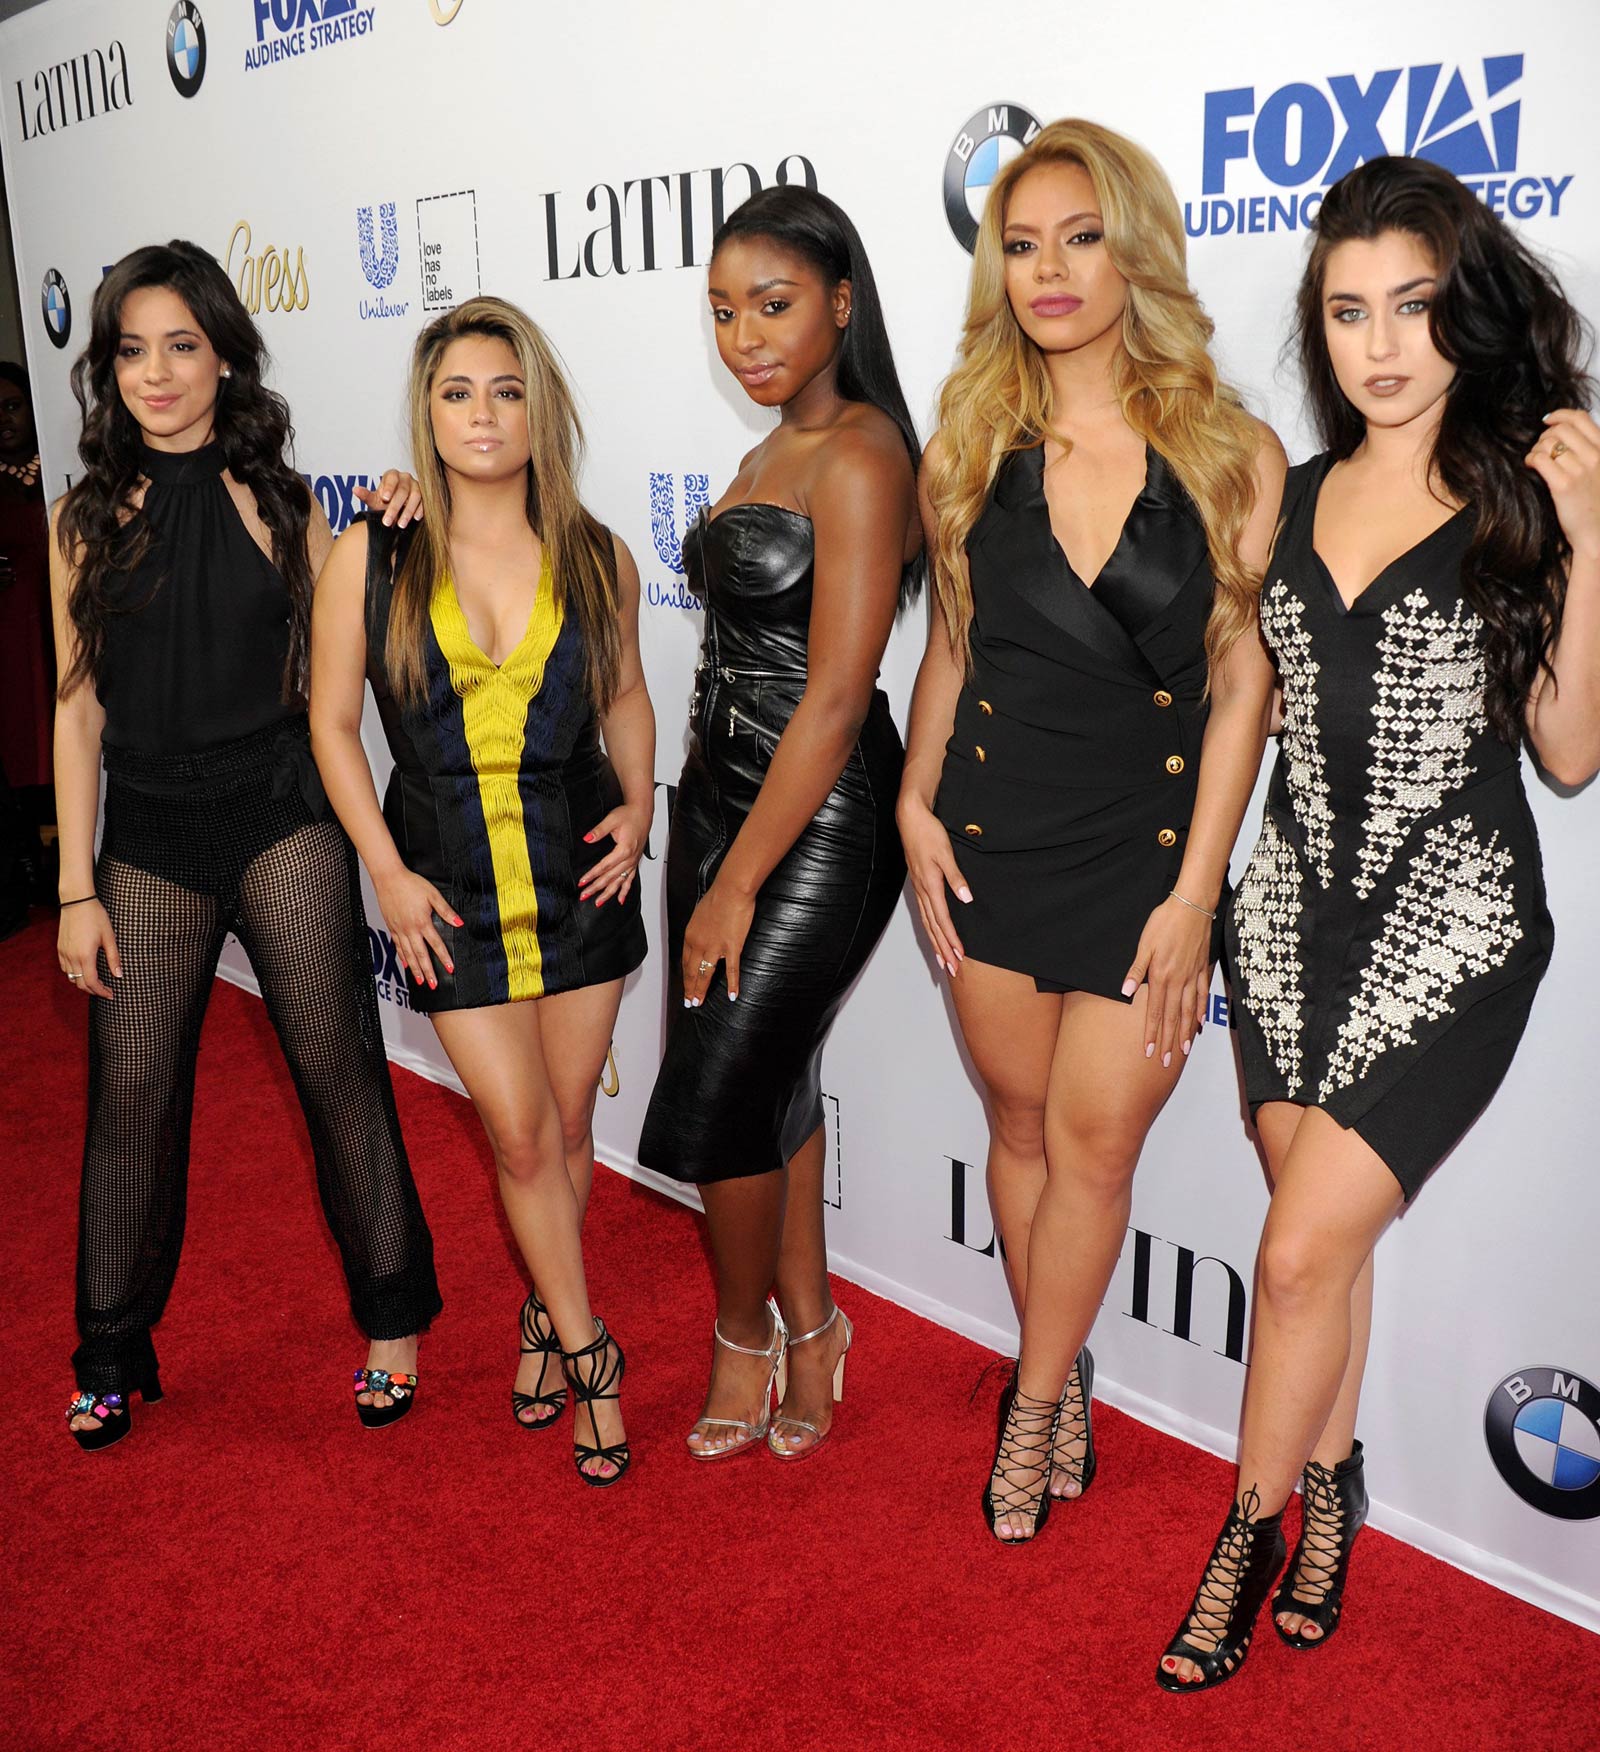 Fifth Harmony at Latina Hot List Party